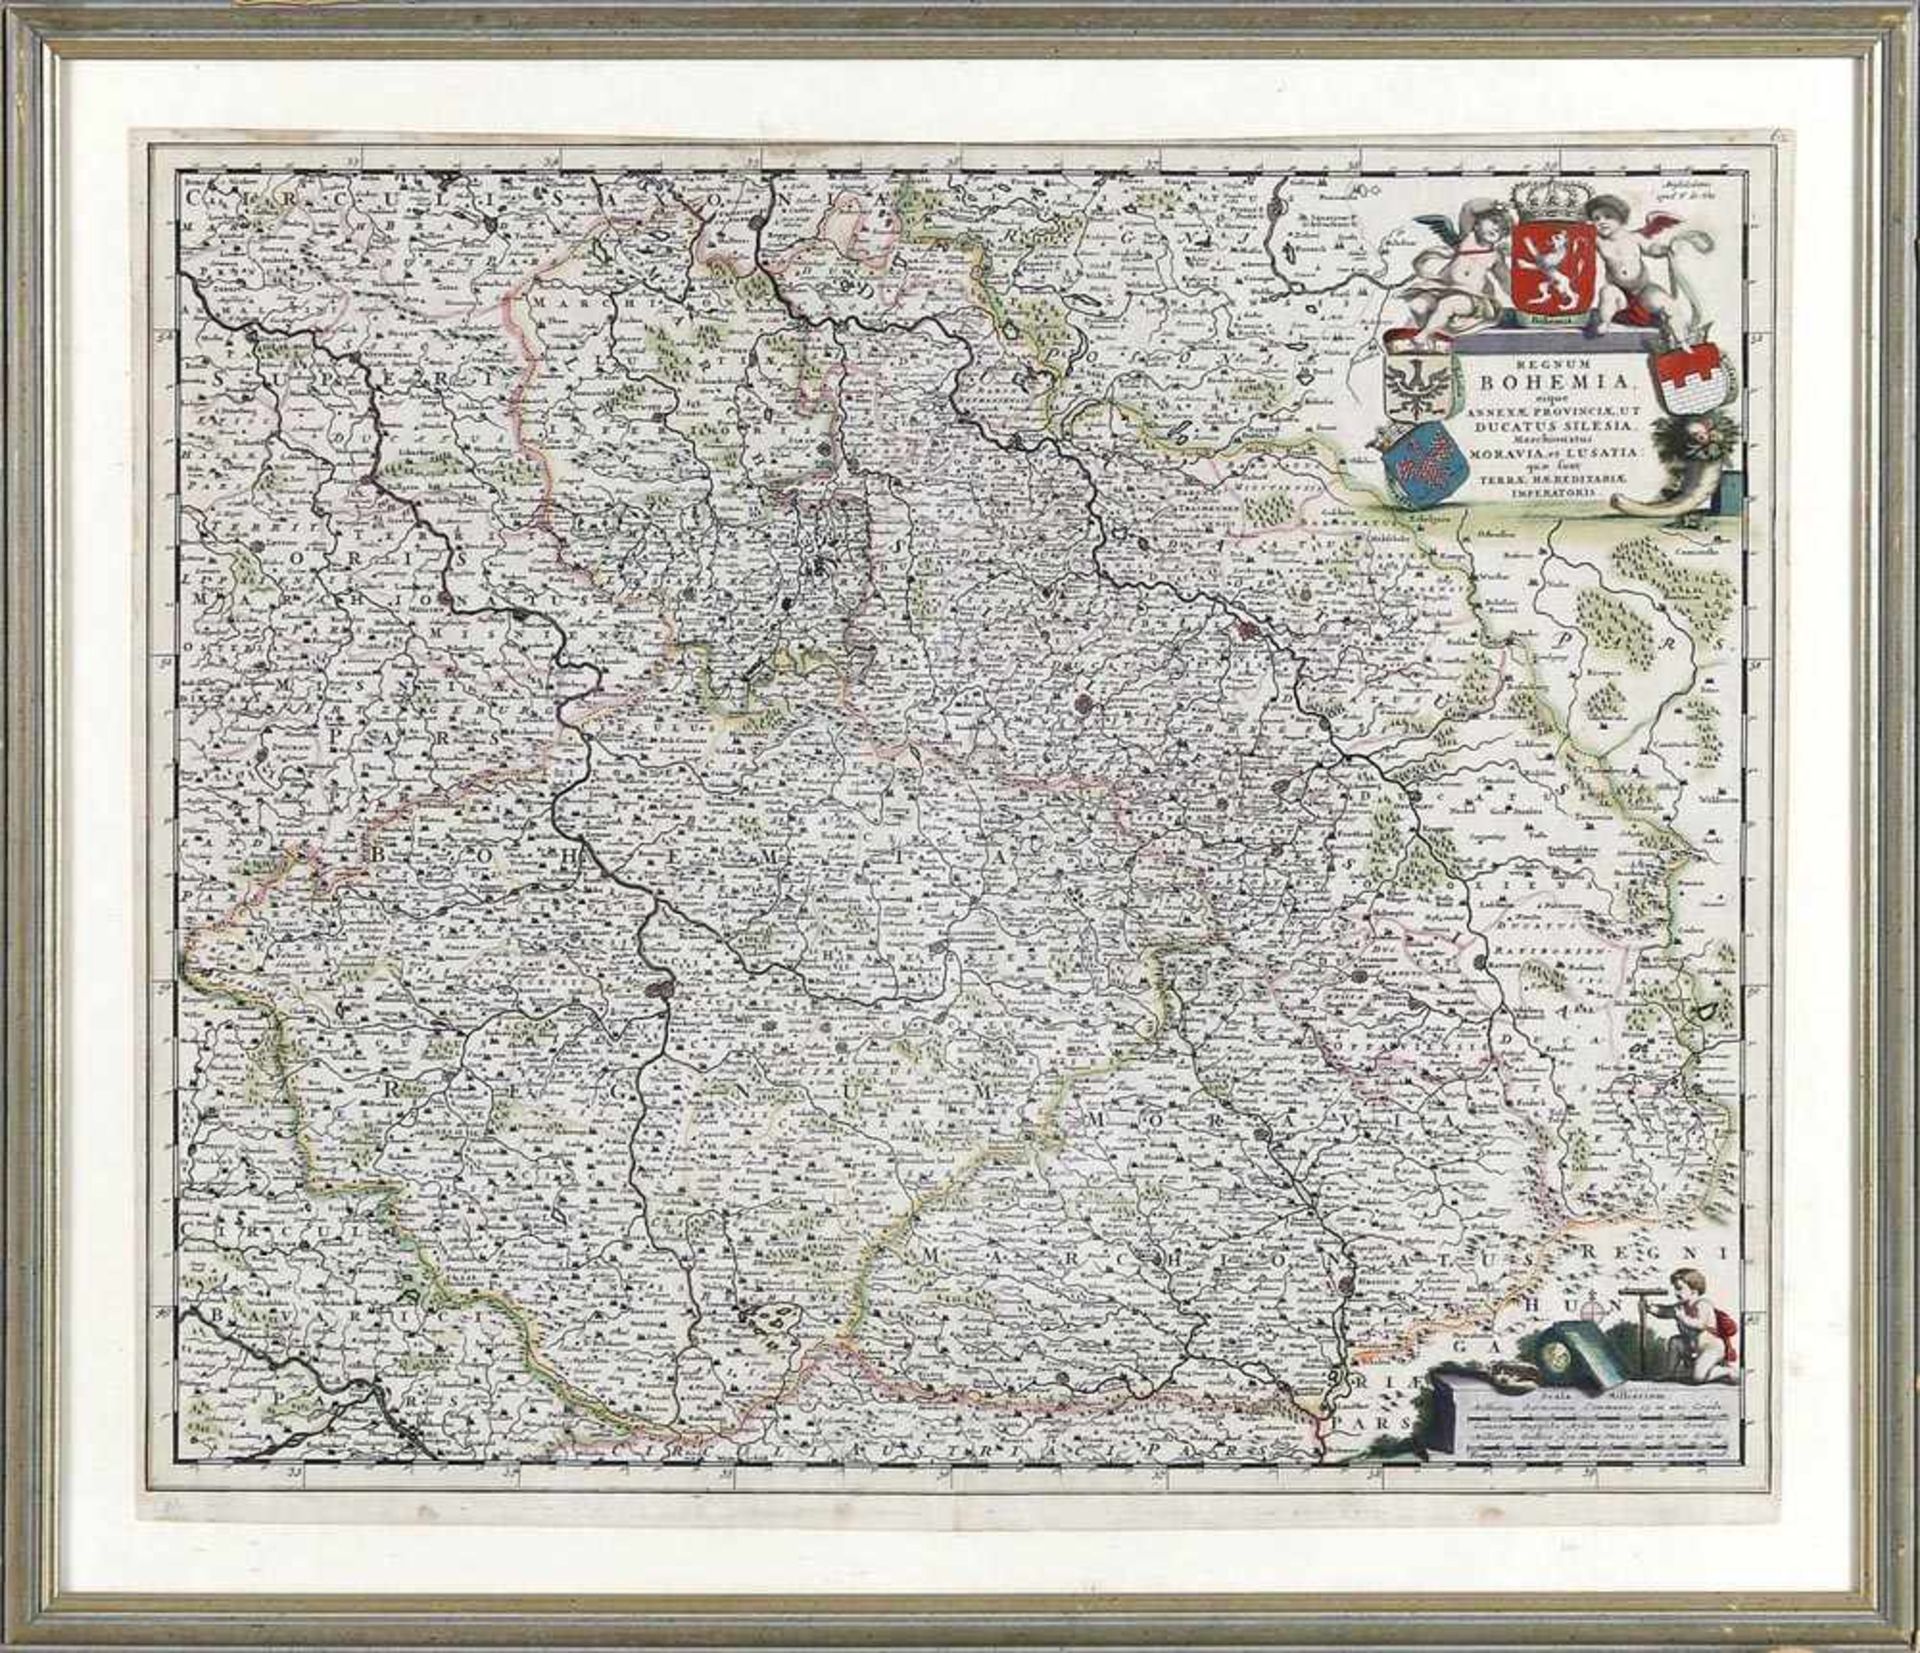 Bohemia, Kupferstichkarte von F. de Wit, Amsterdam, Ende 17. Jh.grenzkoloriert mit schöner Kartusche